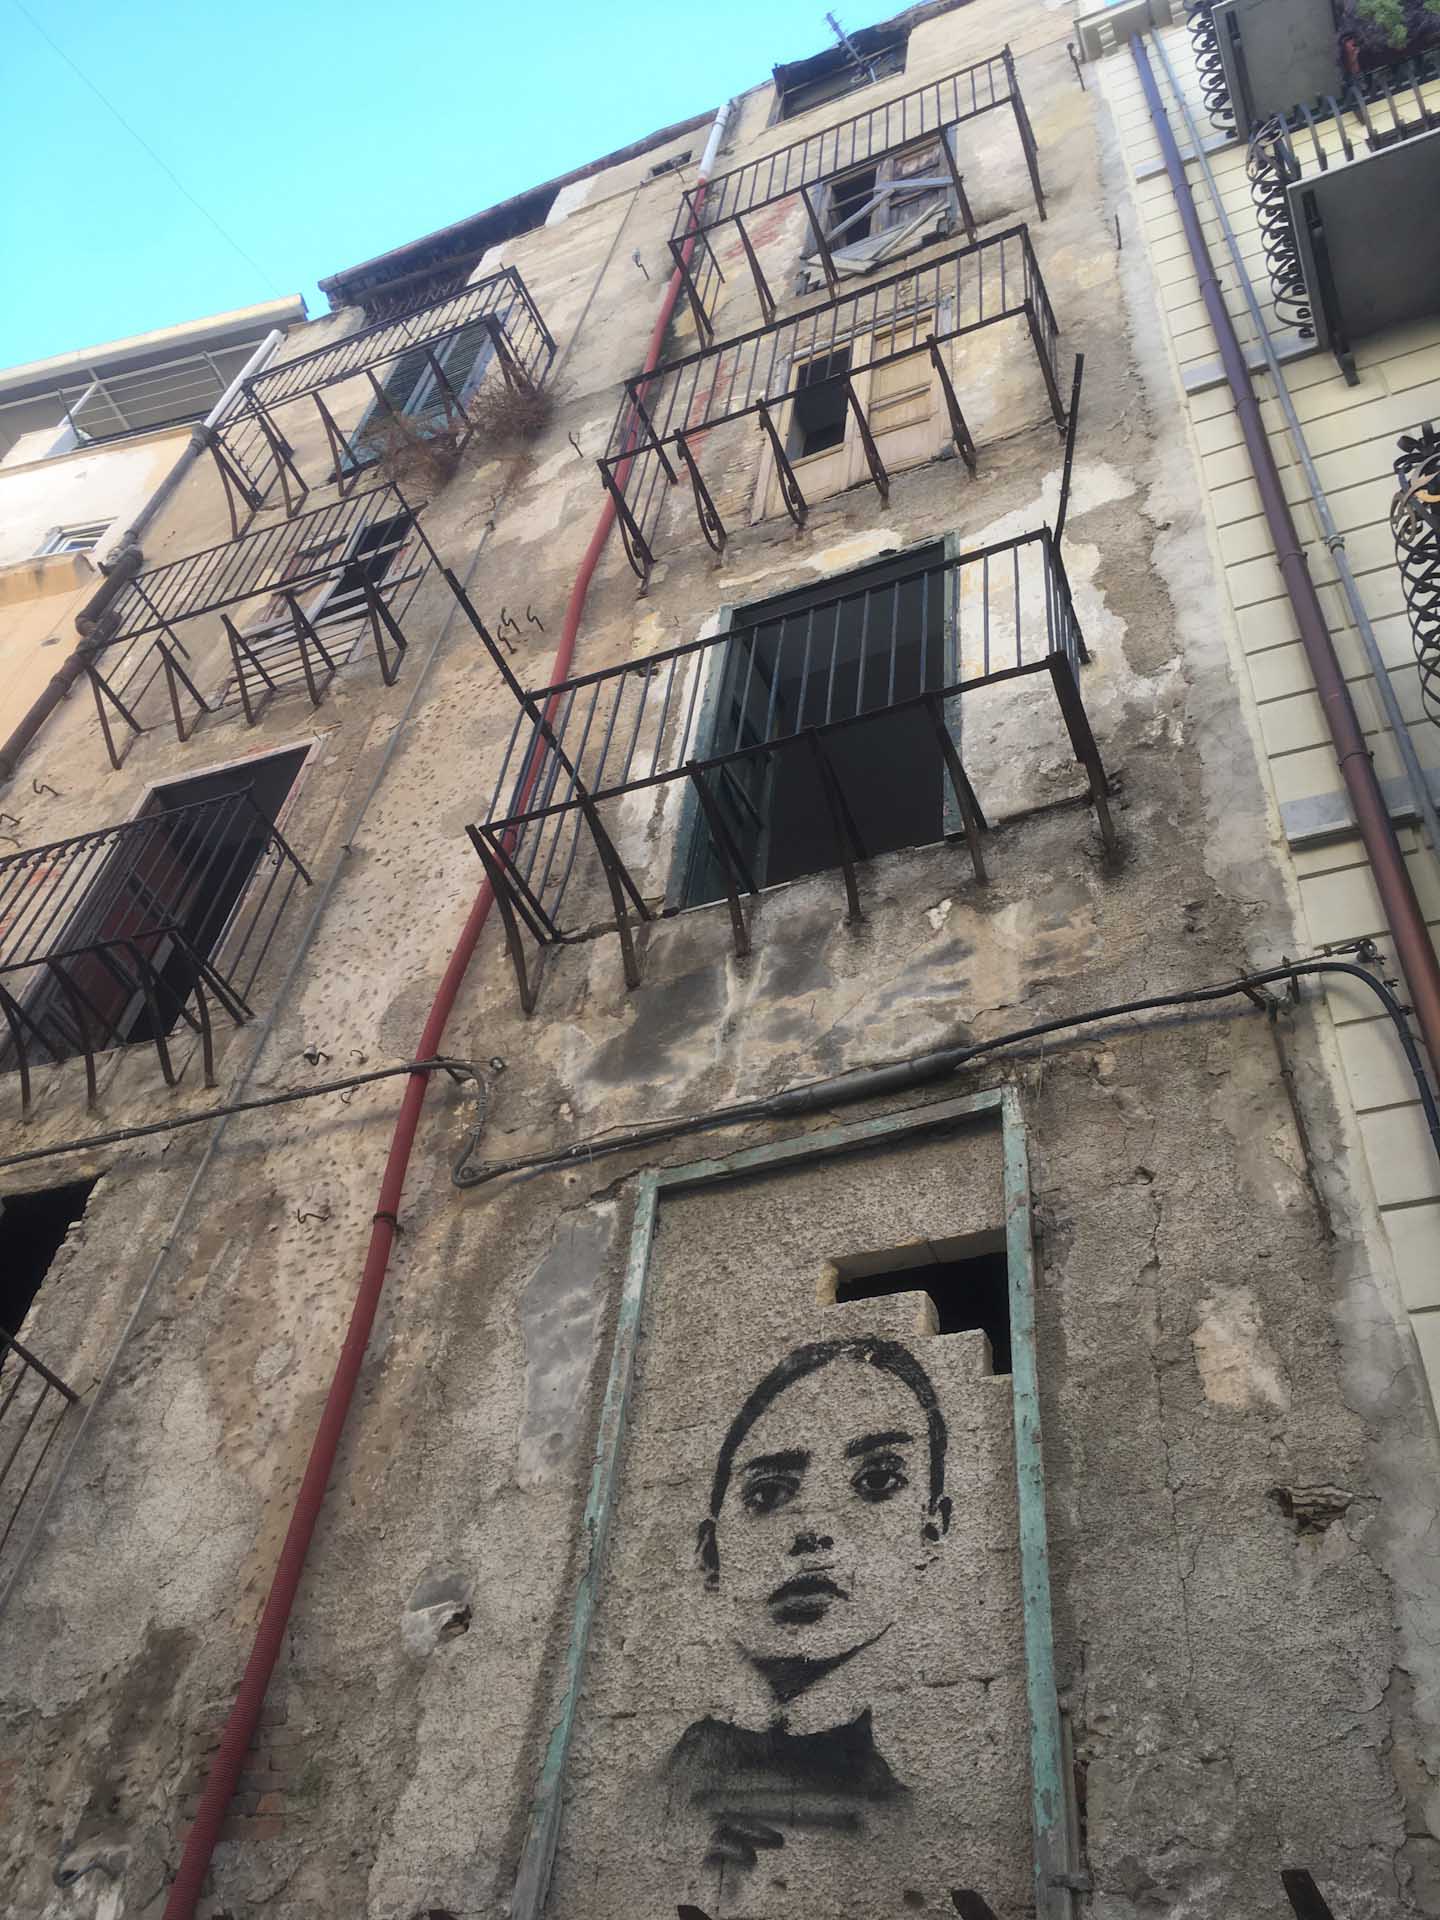 Graffiti in Palermo.